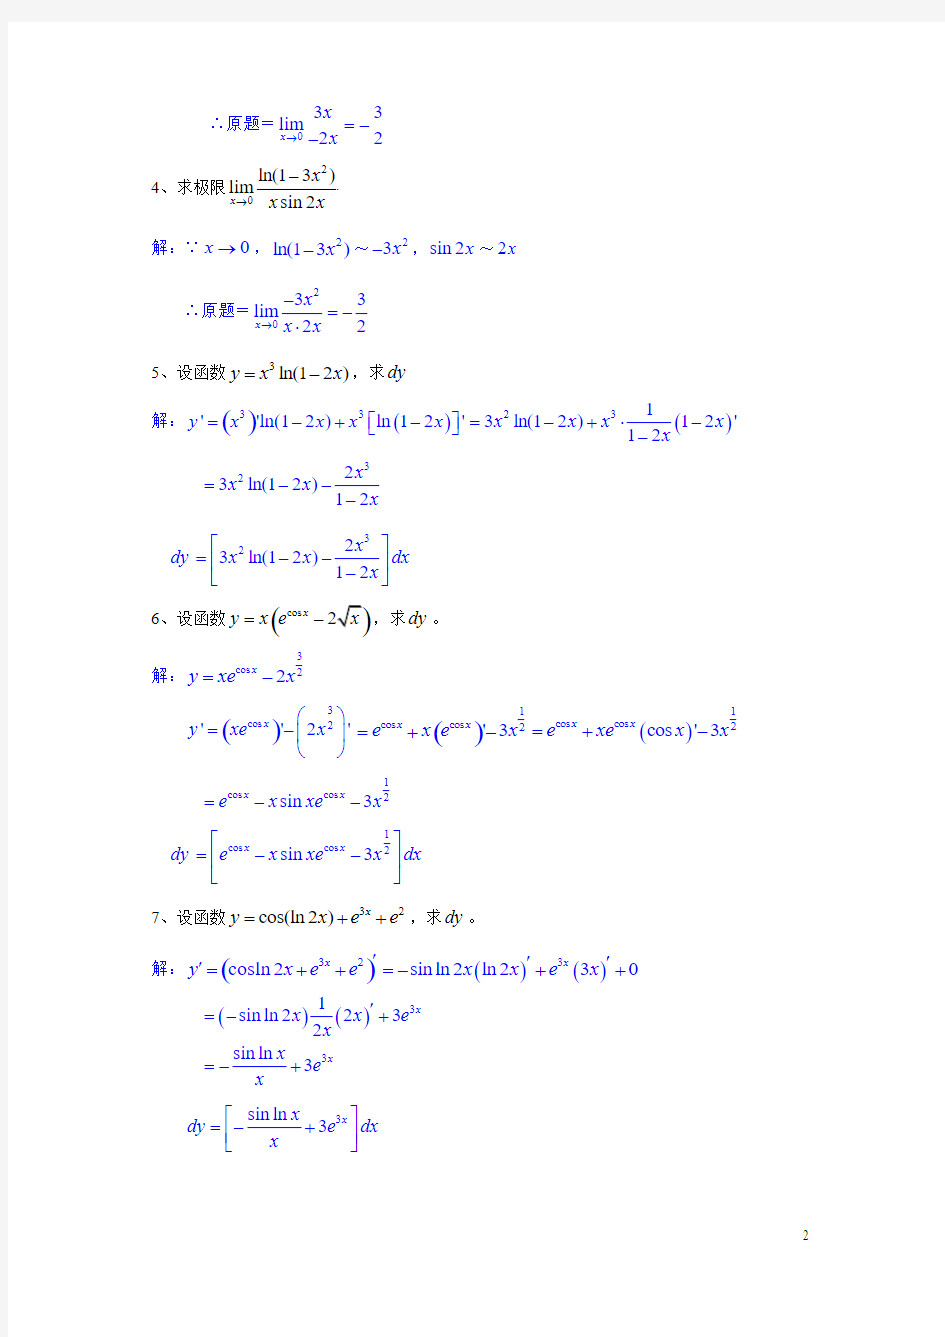 高等数学基础综合练习题(201107)解答